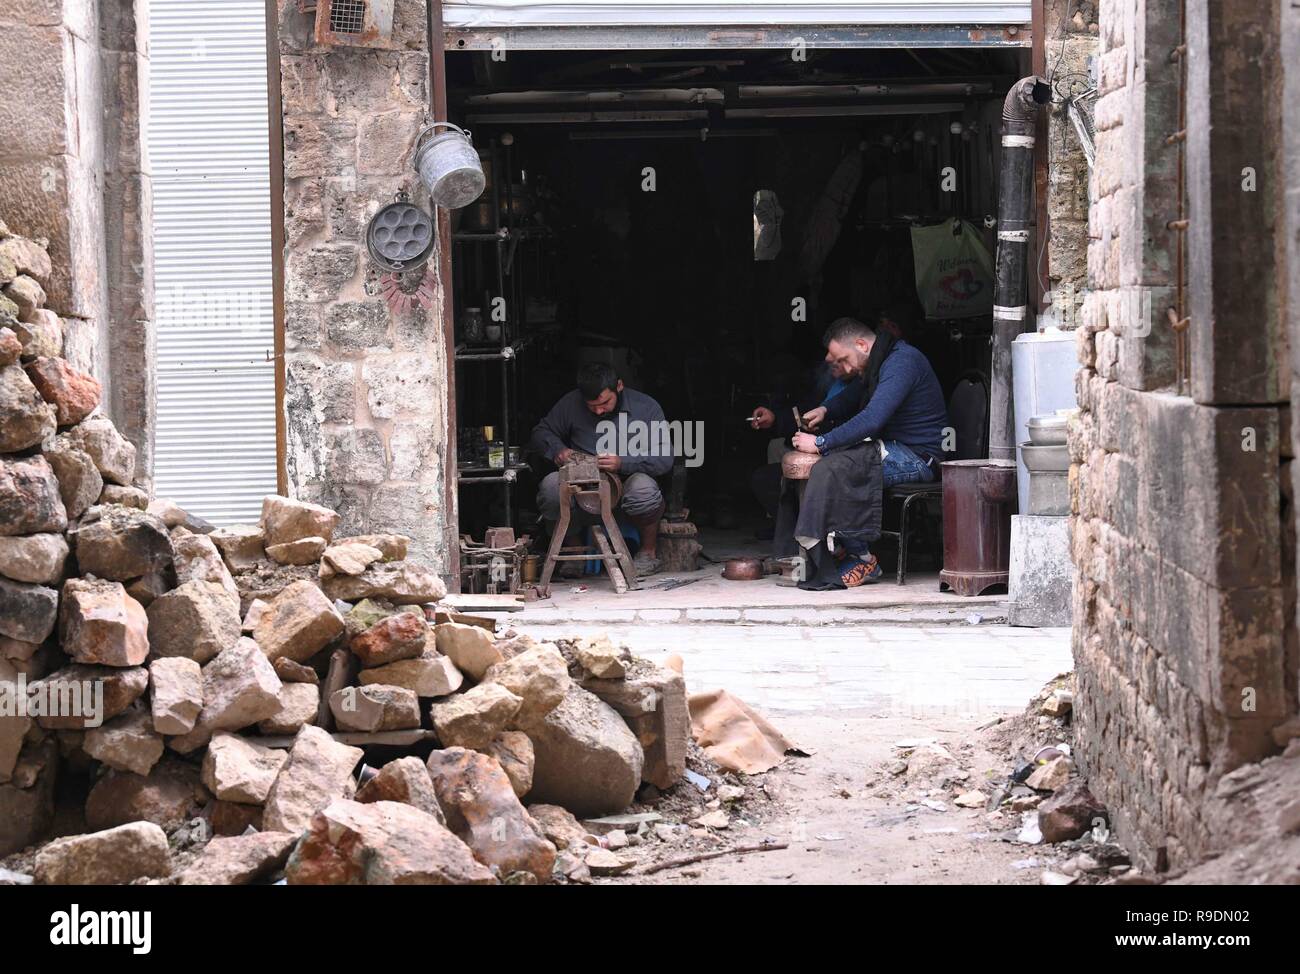 (181222) -- Aleppo (Siria), Dicembre 22, 2018 (Xinhua) -- Siro ramai lavorare nel loro negozio a Al-Nahhasin Souk, un marketplace specializzati nella vendita di rame a mano prodotti, di Aleppo, Siria settentrionale, a Dic. 19, 2018. Nella Siria settentrionale della città di Aleppo, la determinazione dei residenti a ricostruire la loro vita e la città è più forte della distruzione massiccia che si è abbattuta su di loro. Due anni dopo la sua liberazione, le persone hanno già rimboccato le maniche e ha iniziato a fissare la distruzione delle antiche mura marketplace in città, non scoraggiati dalla devastazione. (Xinhua/Ammar S Foto Stock